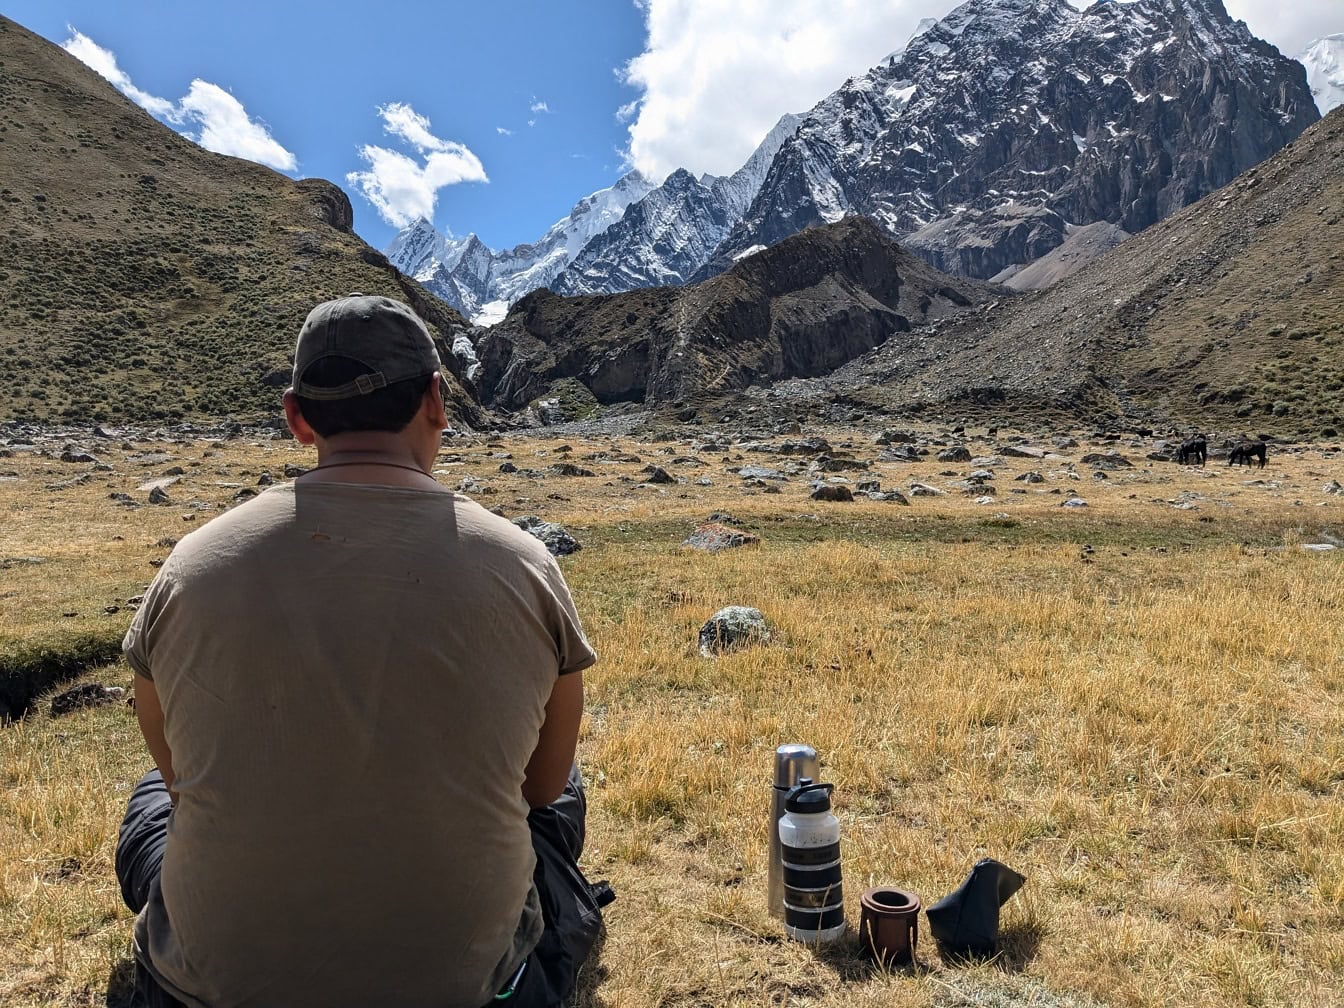 Mand sidder på en mark med bjerge i baggrunden ved Cordillera Huayhuash bjergkæde i Peru